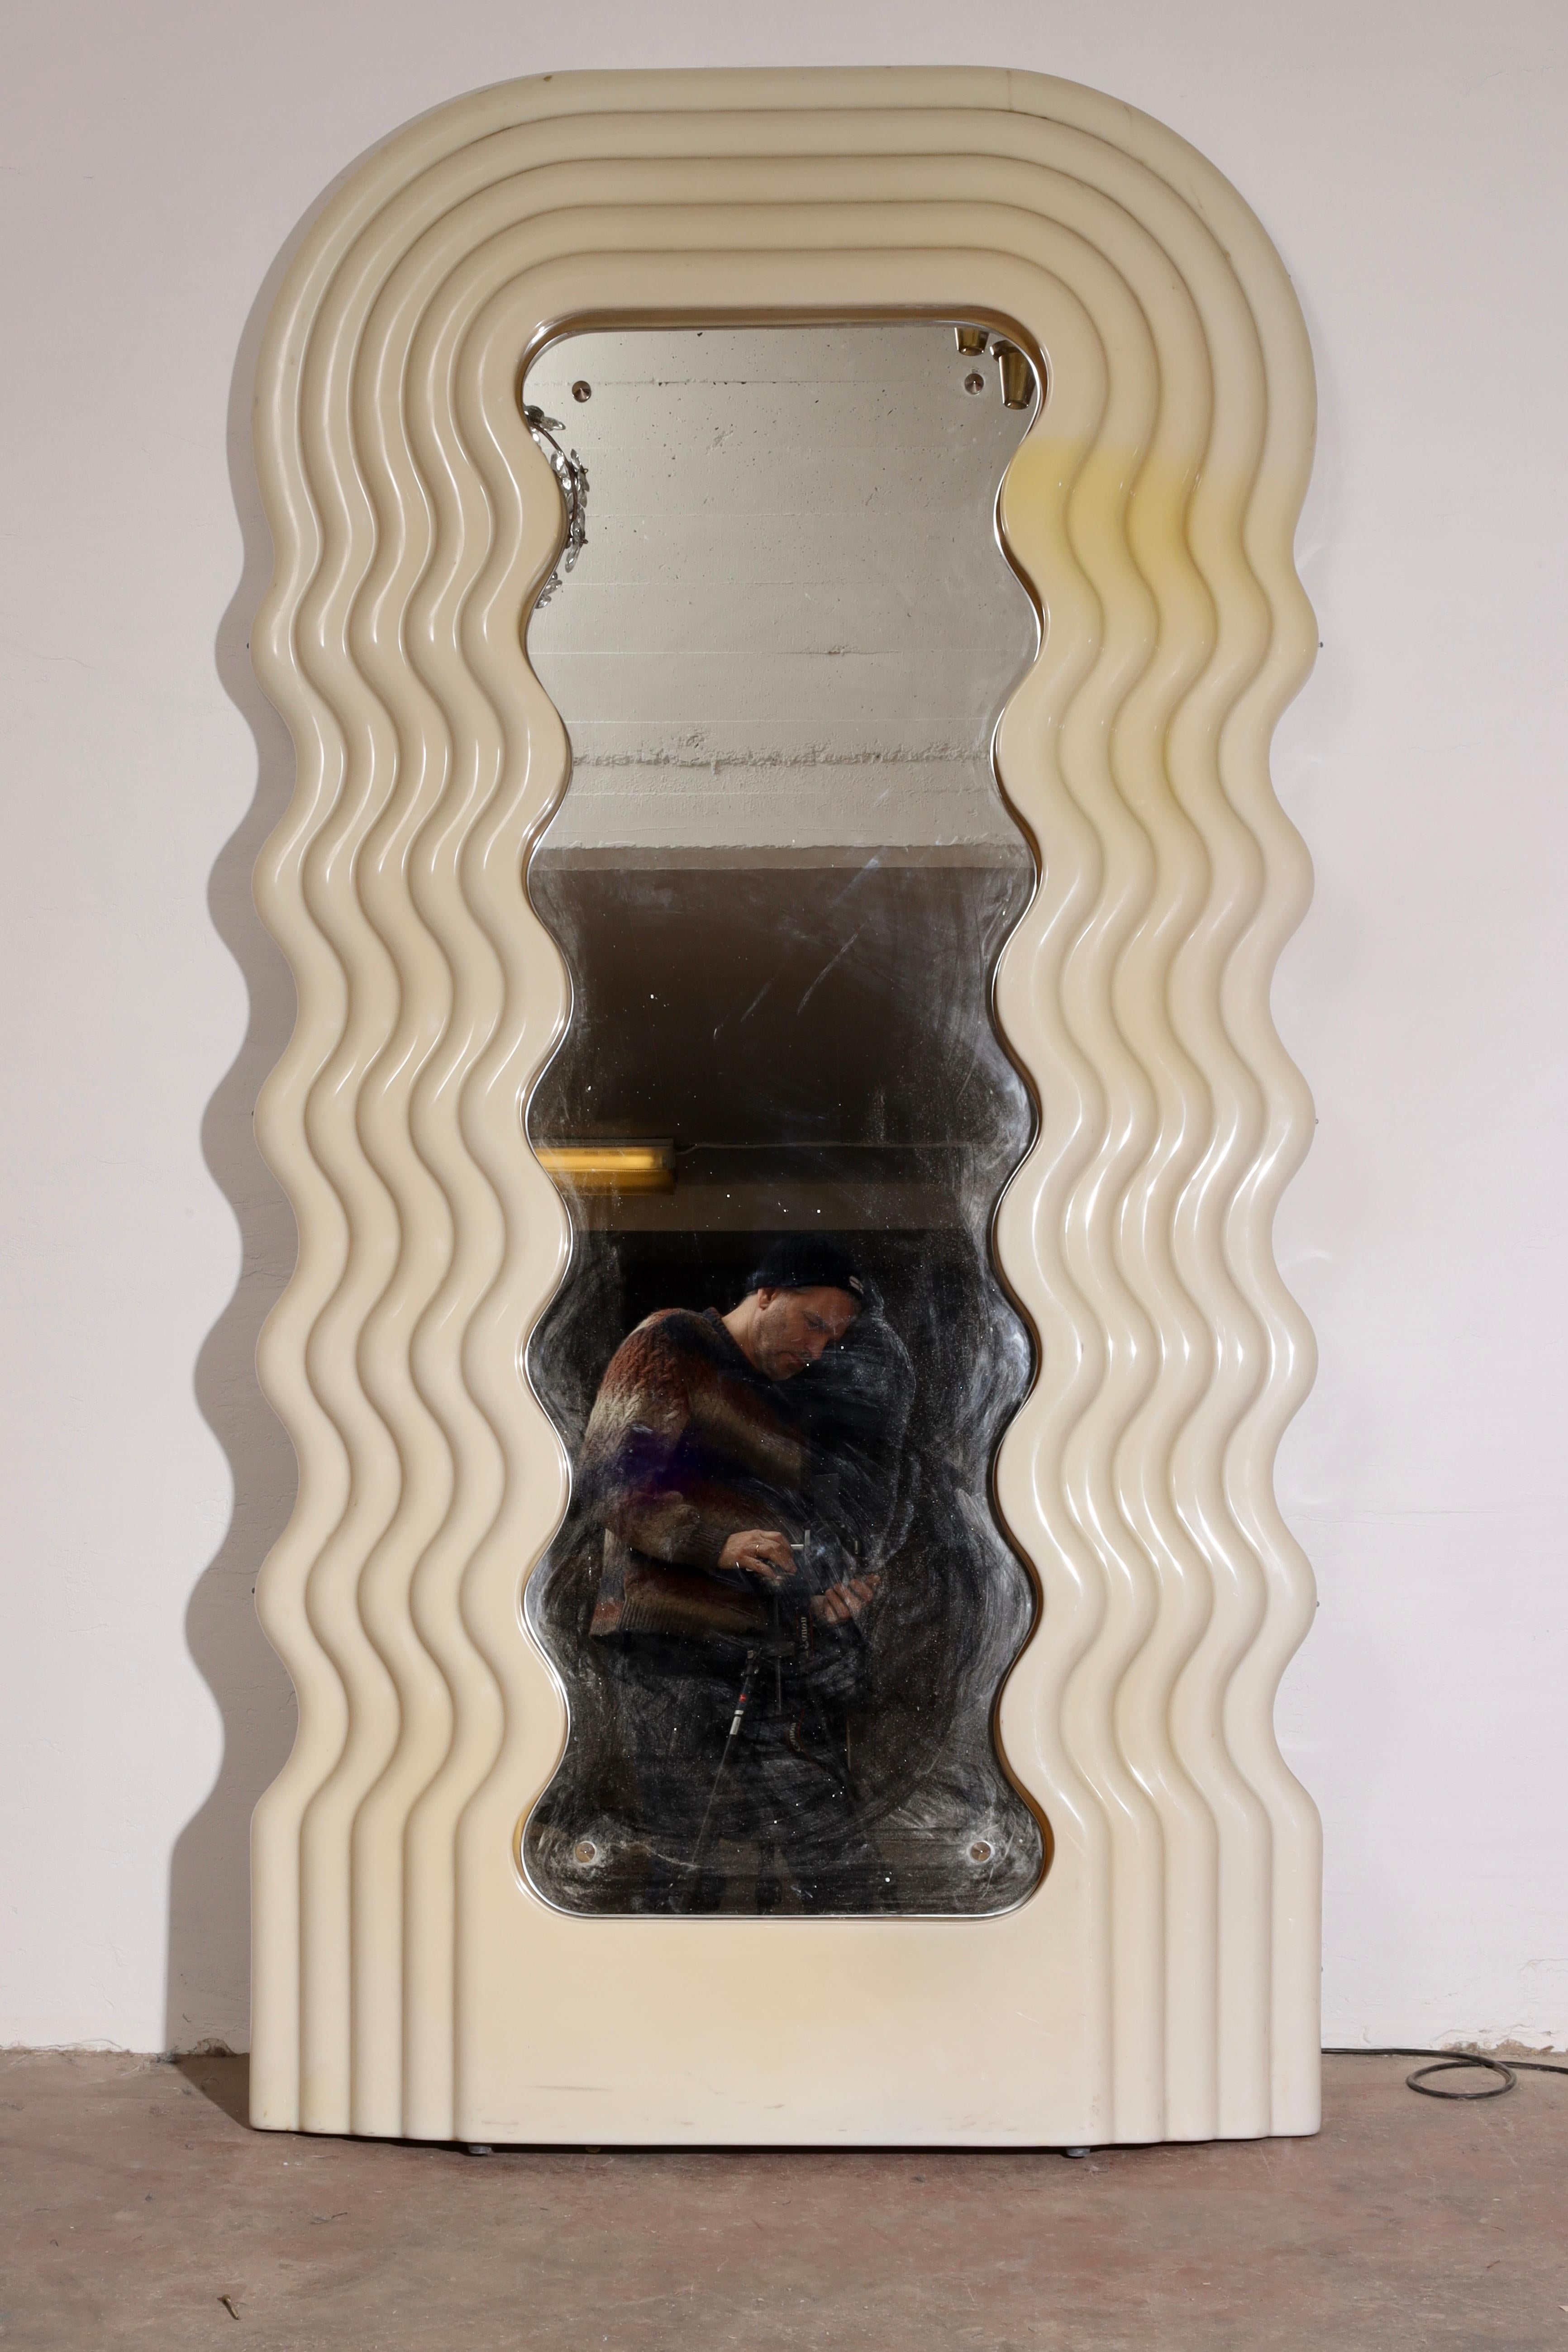 Modèle original de la première édition du miroir Ultrafragola conçu par Ettore Sottsass pour Poltronova. Miroir lumineux avec coque en acrylique faite de vagues superposées autour du miroir central qui imite le même design ondulé. Modèle original de